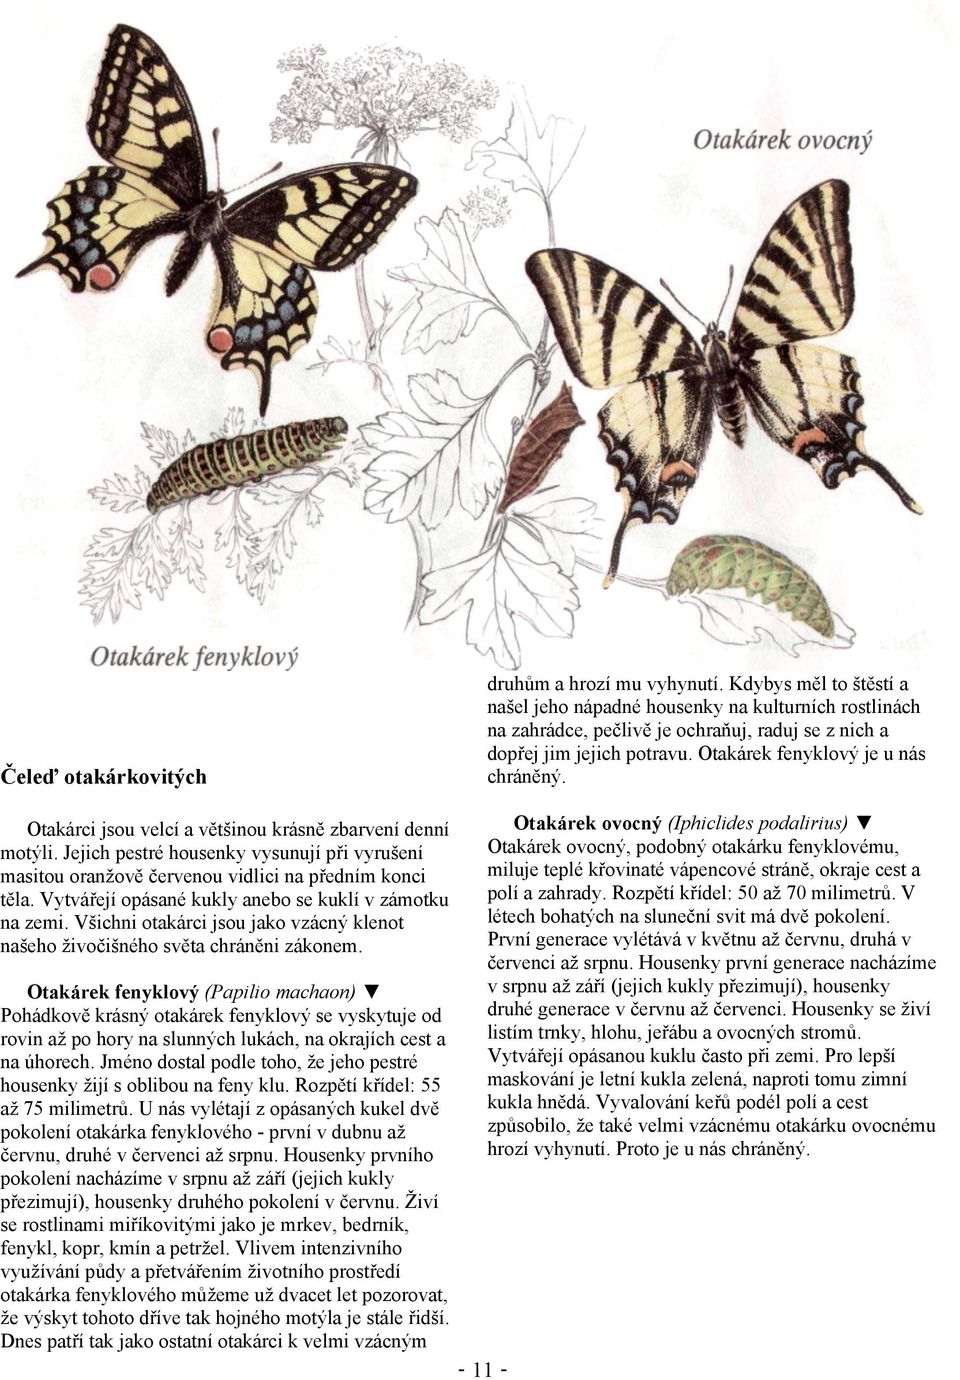 Otakárci jsou velcí a většinou krásně zbarvení denní motýli. Jejich pestré housenky vysunují při vyrušení masitou oranžově červenou vidlici na předním konci těla.